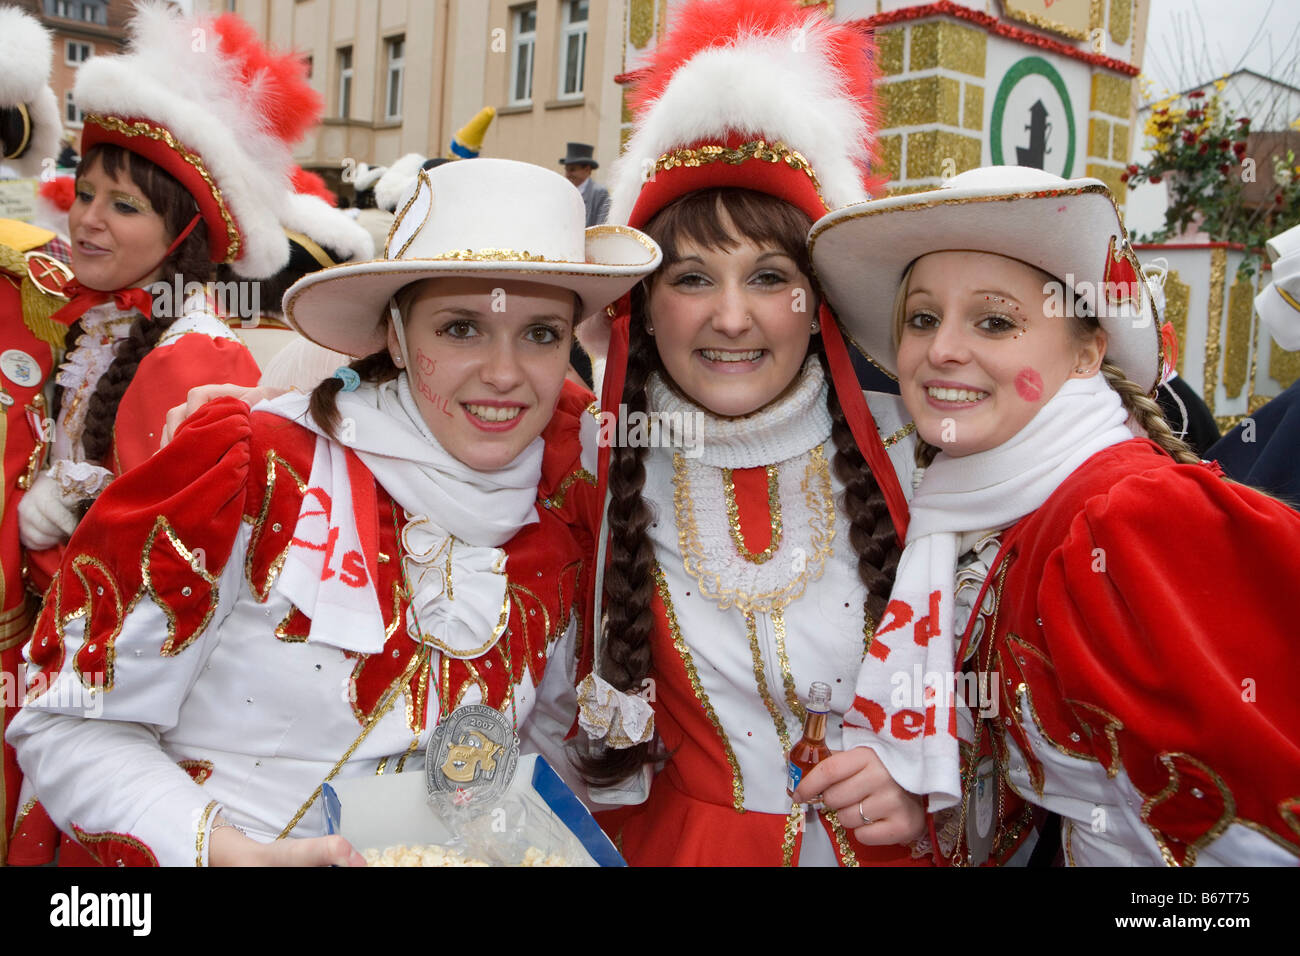 Funkenmariechen in Costume at Rosenmontag Carnival Celebration, Fulda, Rhoen, Hesse, Germany Stock Photo